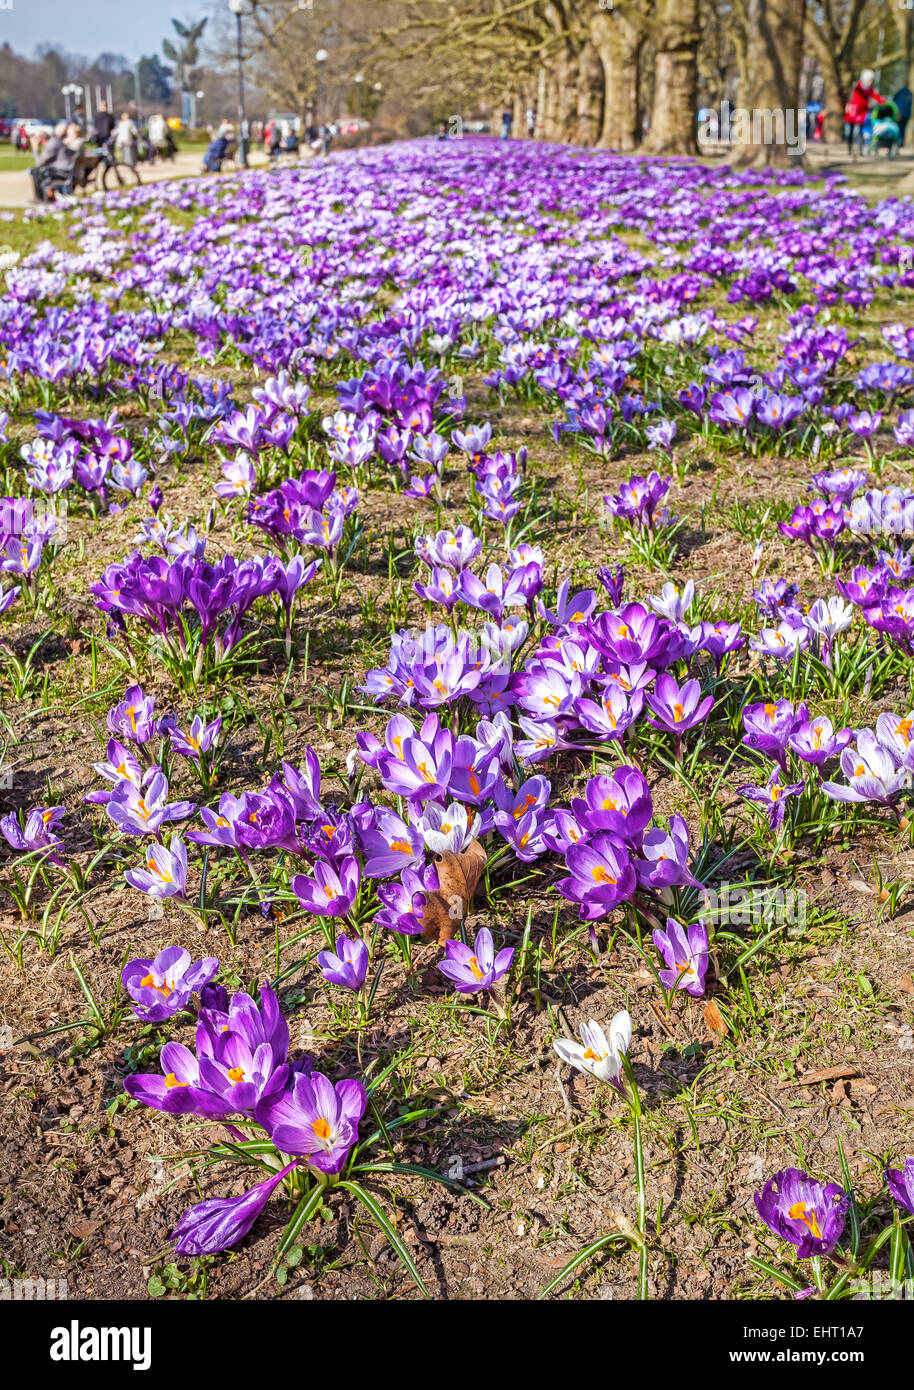 Frühling in einem Park, Krokus Blumen Feld. Stockfoto